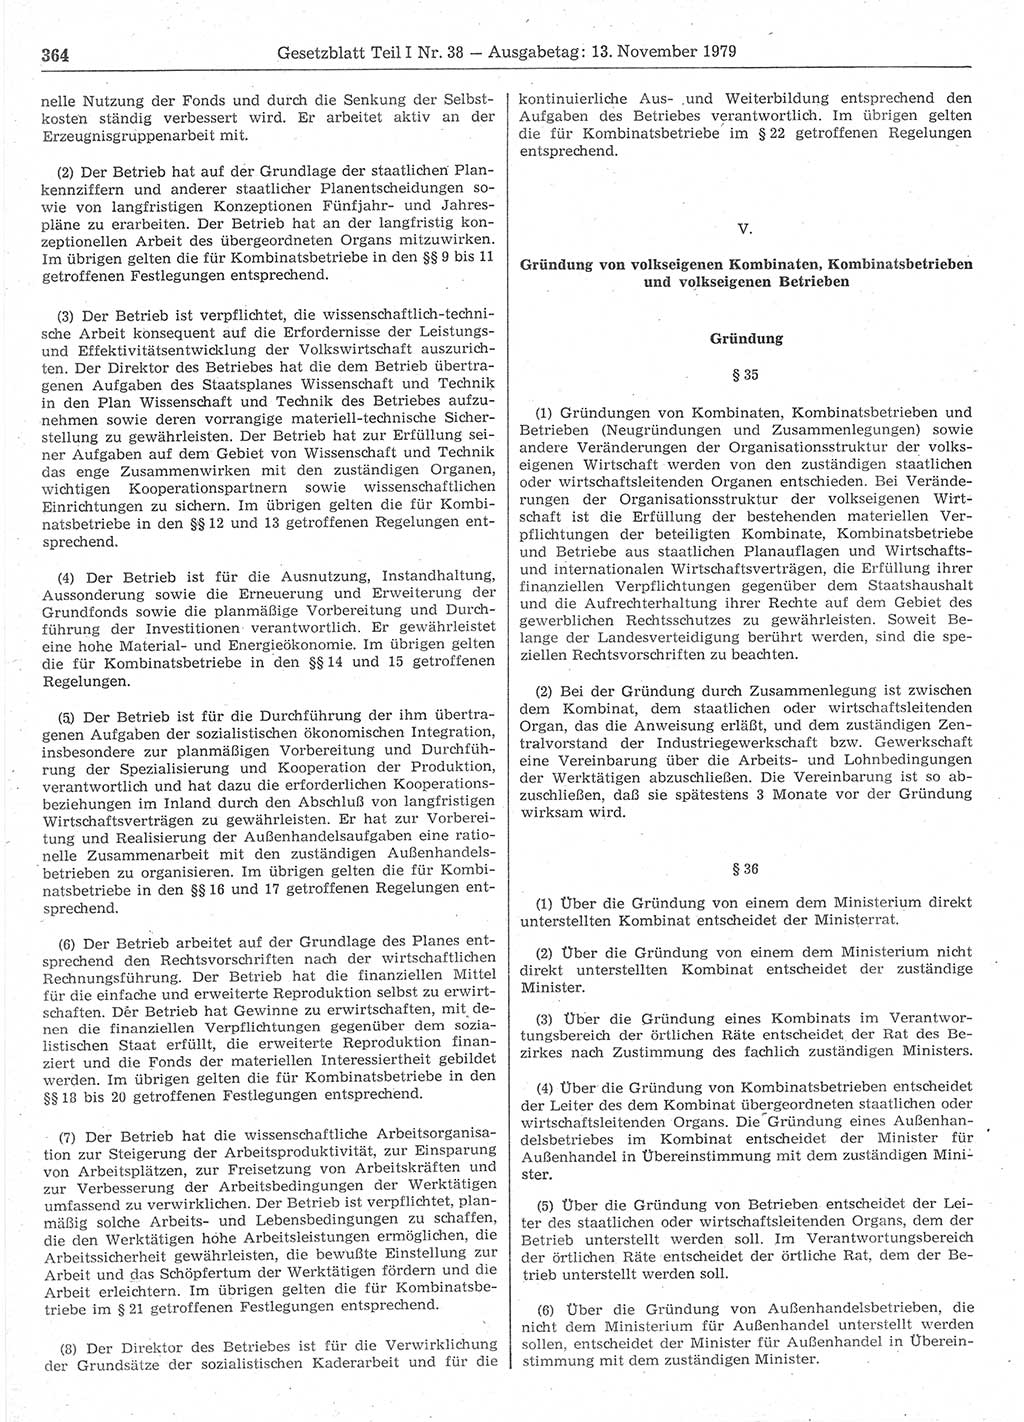 Gesetzblatt (GBl.) der Deutschen Demokratischen Republik (DDR) Teil Ⅰ 1979, Seite 364 (GBl. DDR Ⅰ 1979, S. 364)